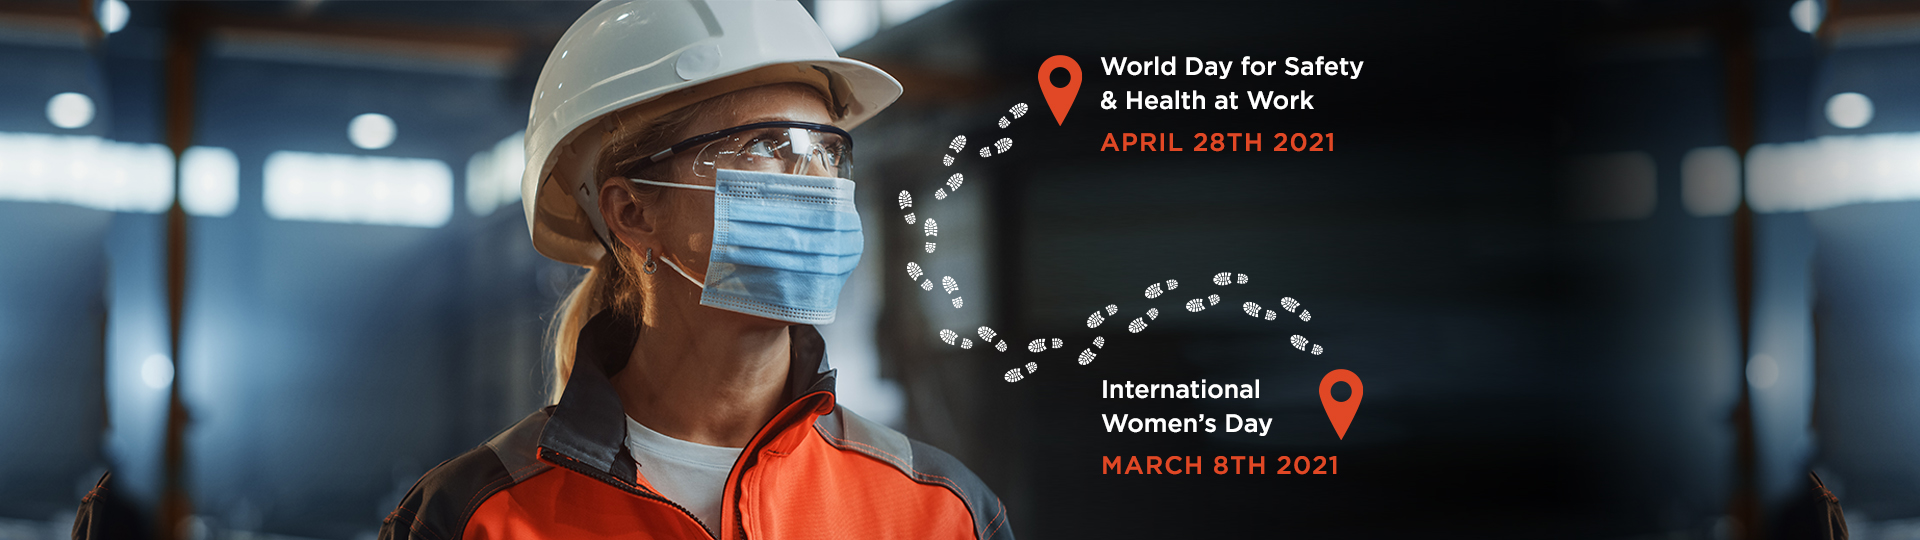 DuPont Sustainable Solutions célèbre la journée mondiale de la sécurité et de la santé au travail 2021 en partageant les parcours et réflexions de femmes, leaders dans leurs domaines